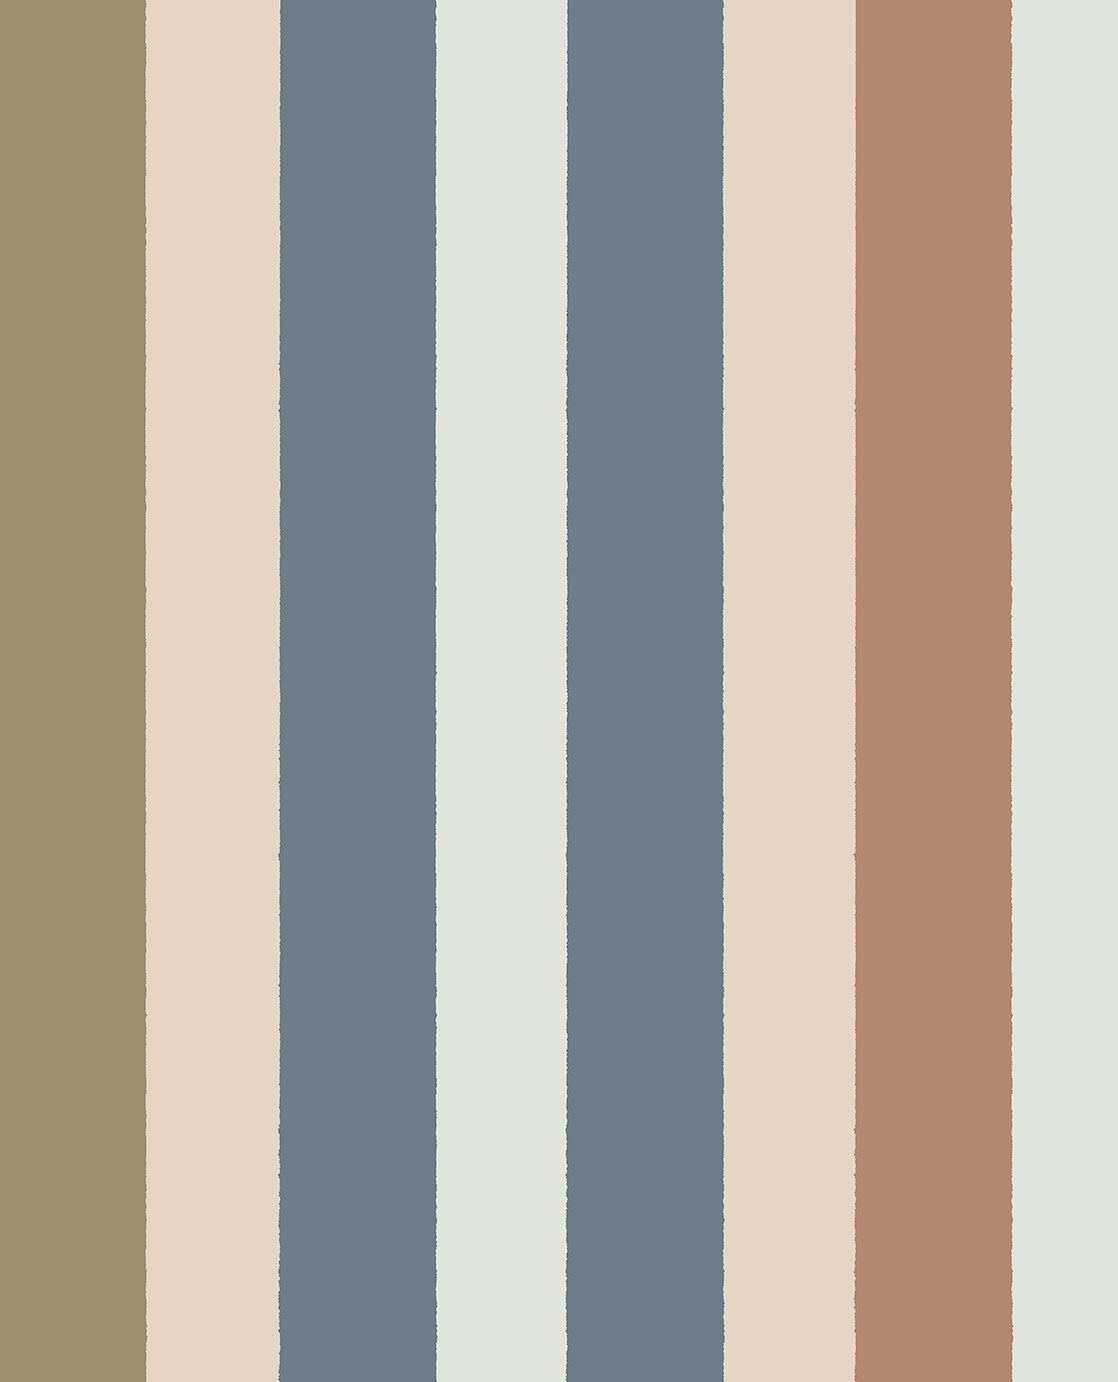 Explore Multi-colour Stripe wallpaper